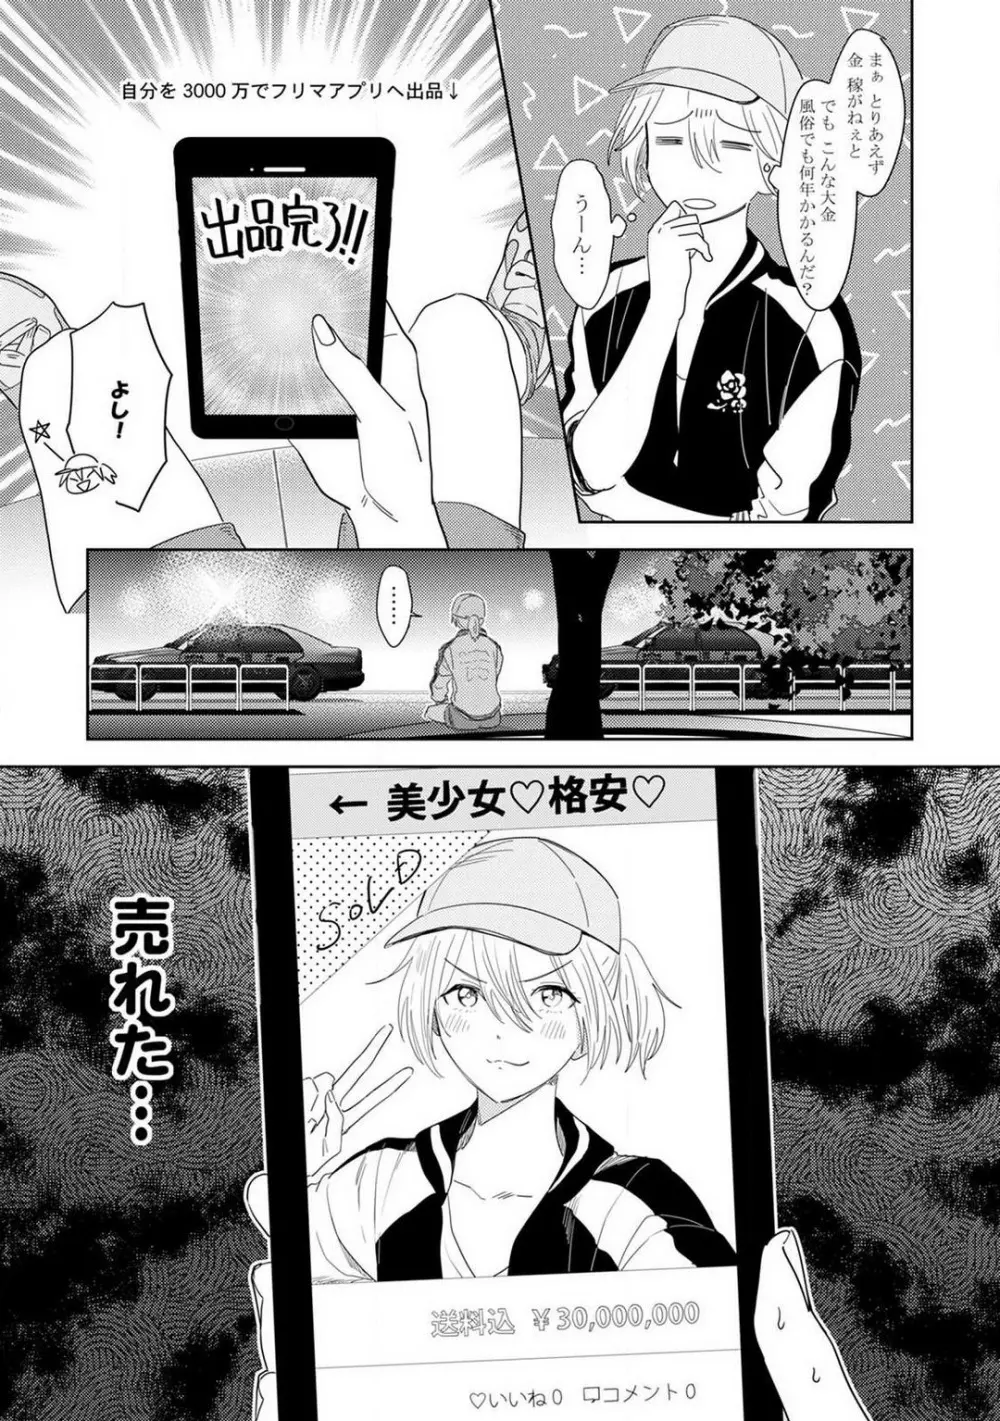 御曹司とヤンキー女のこじらせ恋 1-6 6ページ